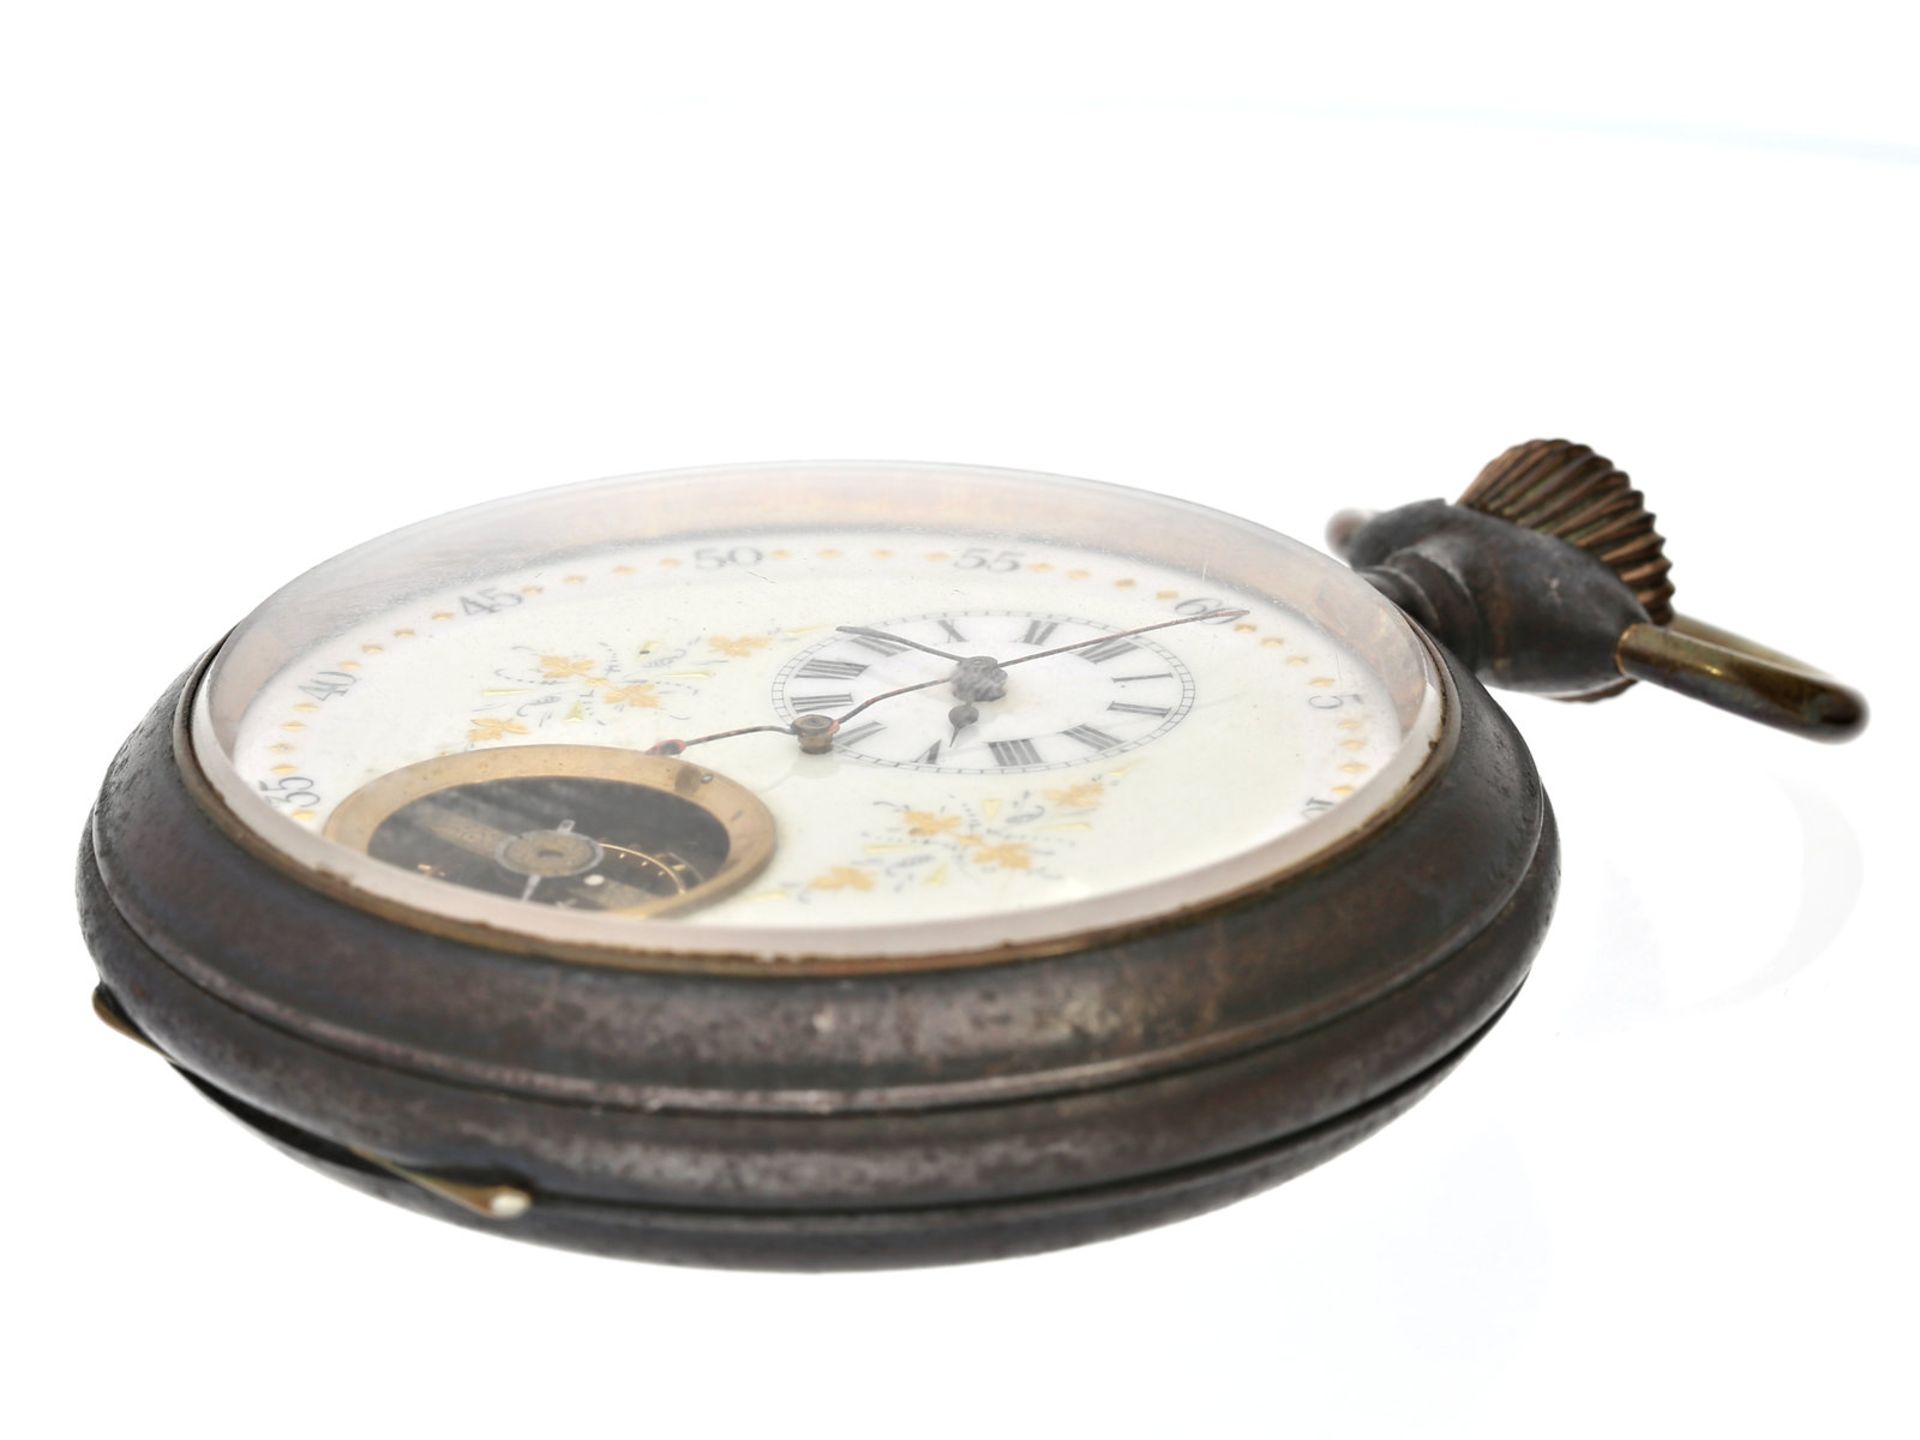 Taschenuhr: sehr seltene, übergroße 15-Tage-Taschenuhr mit dezentralem Zifferblatt, Sicht auf die - Image 2 of 3